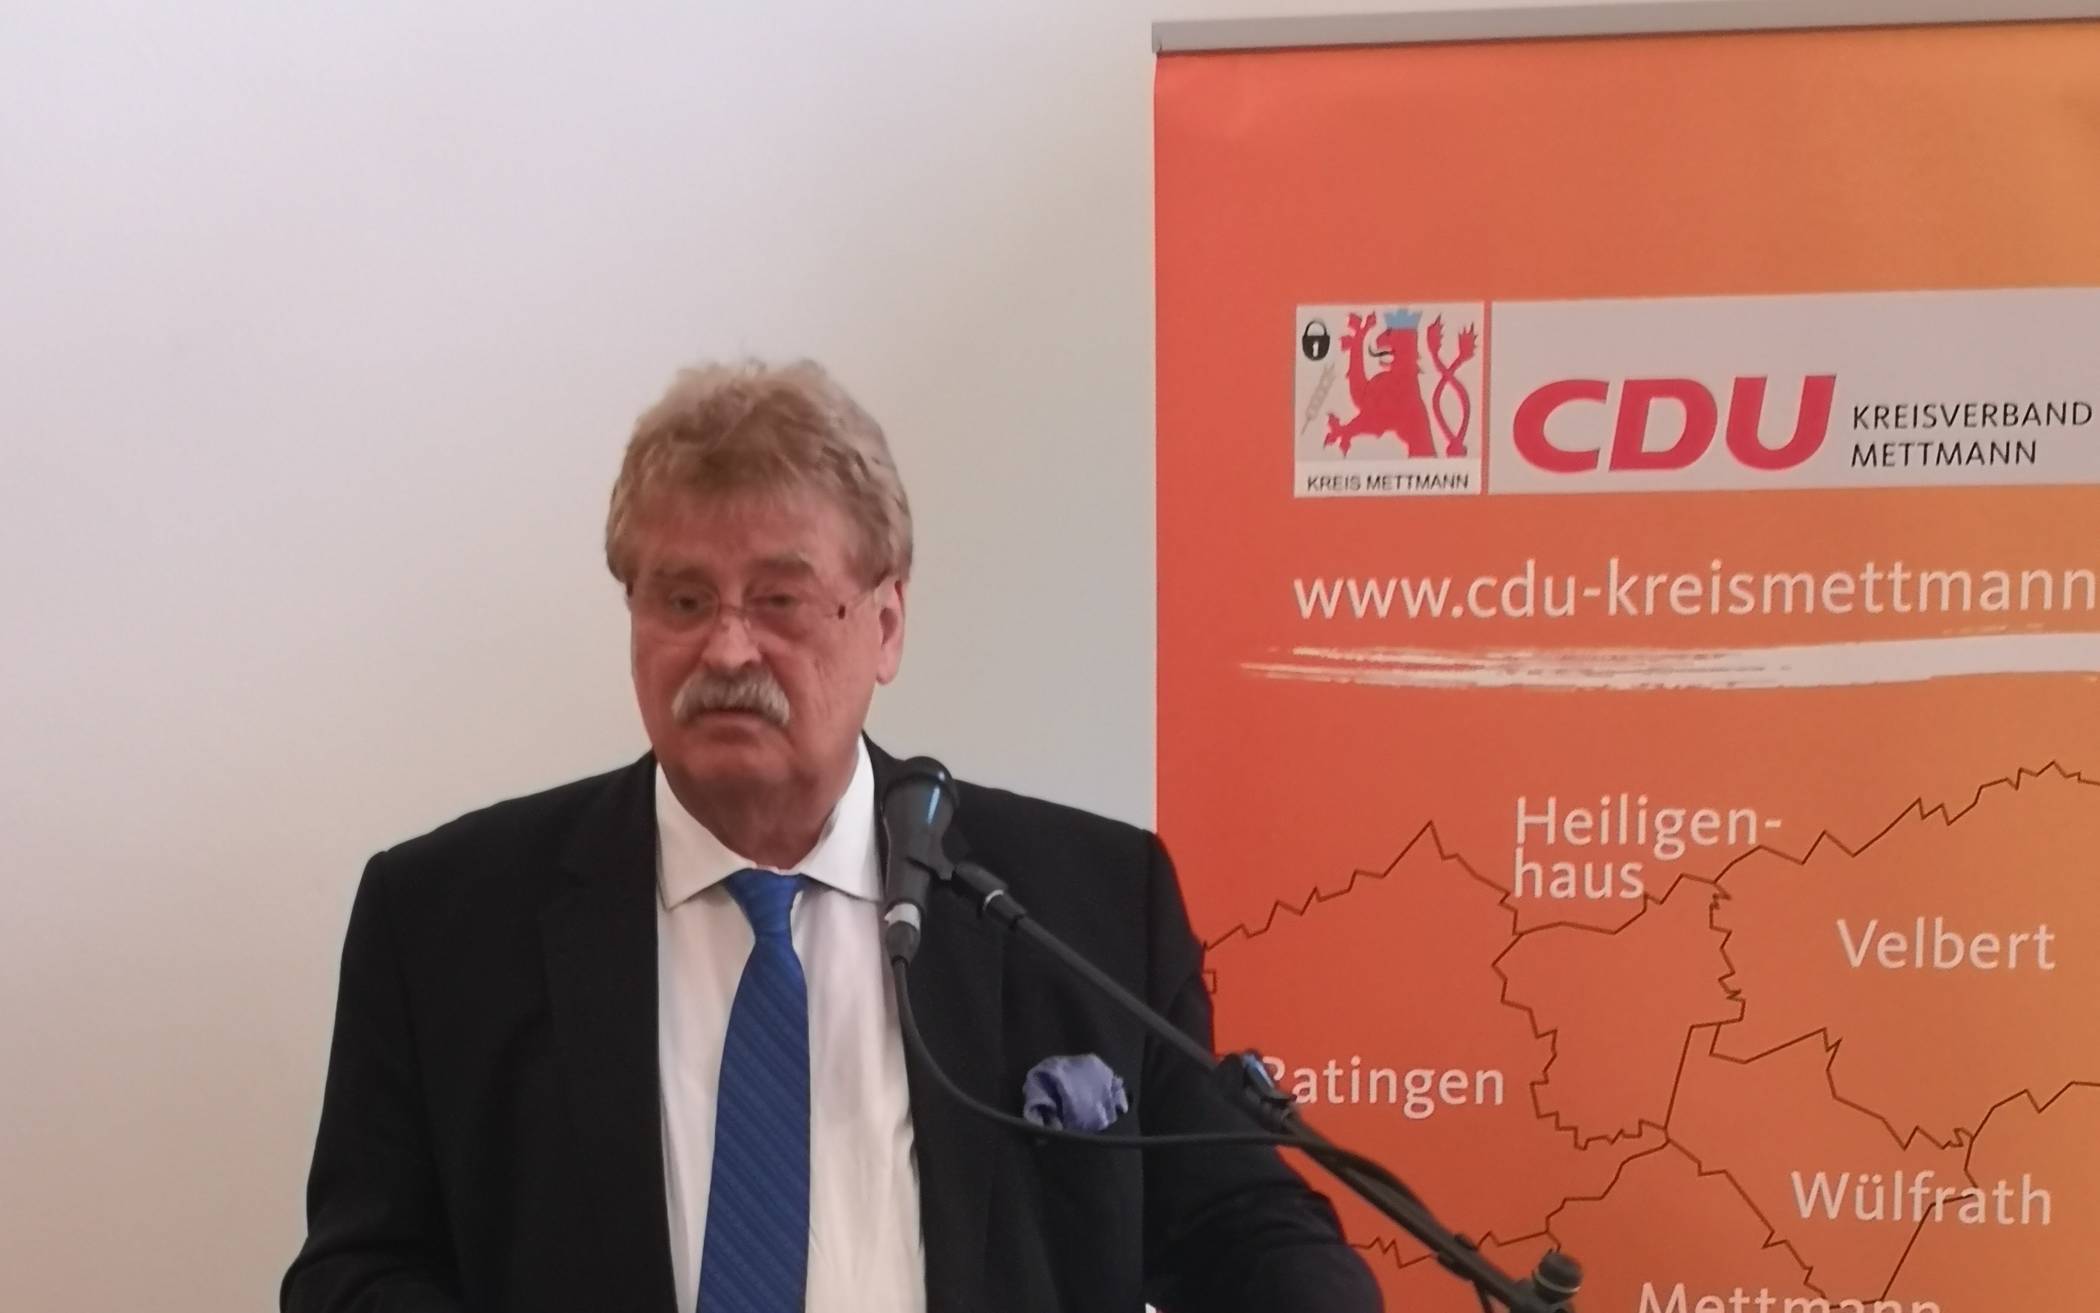  Der Europaabgeordnete Elmar Brok warb auf einer Wahlkampfveranstaltung der Kreis-CDU für die „Erfolgsgeschichte der Europäischen Union“.    